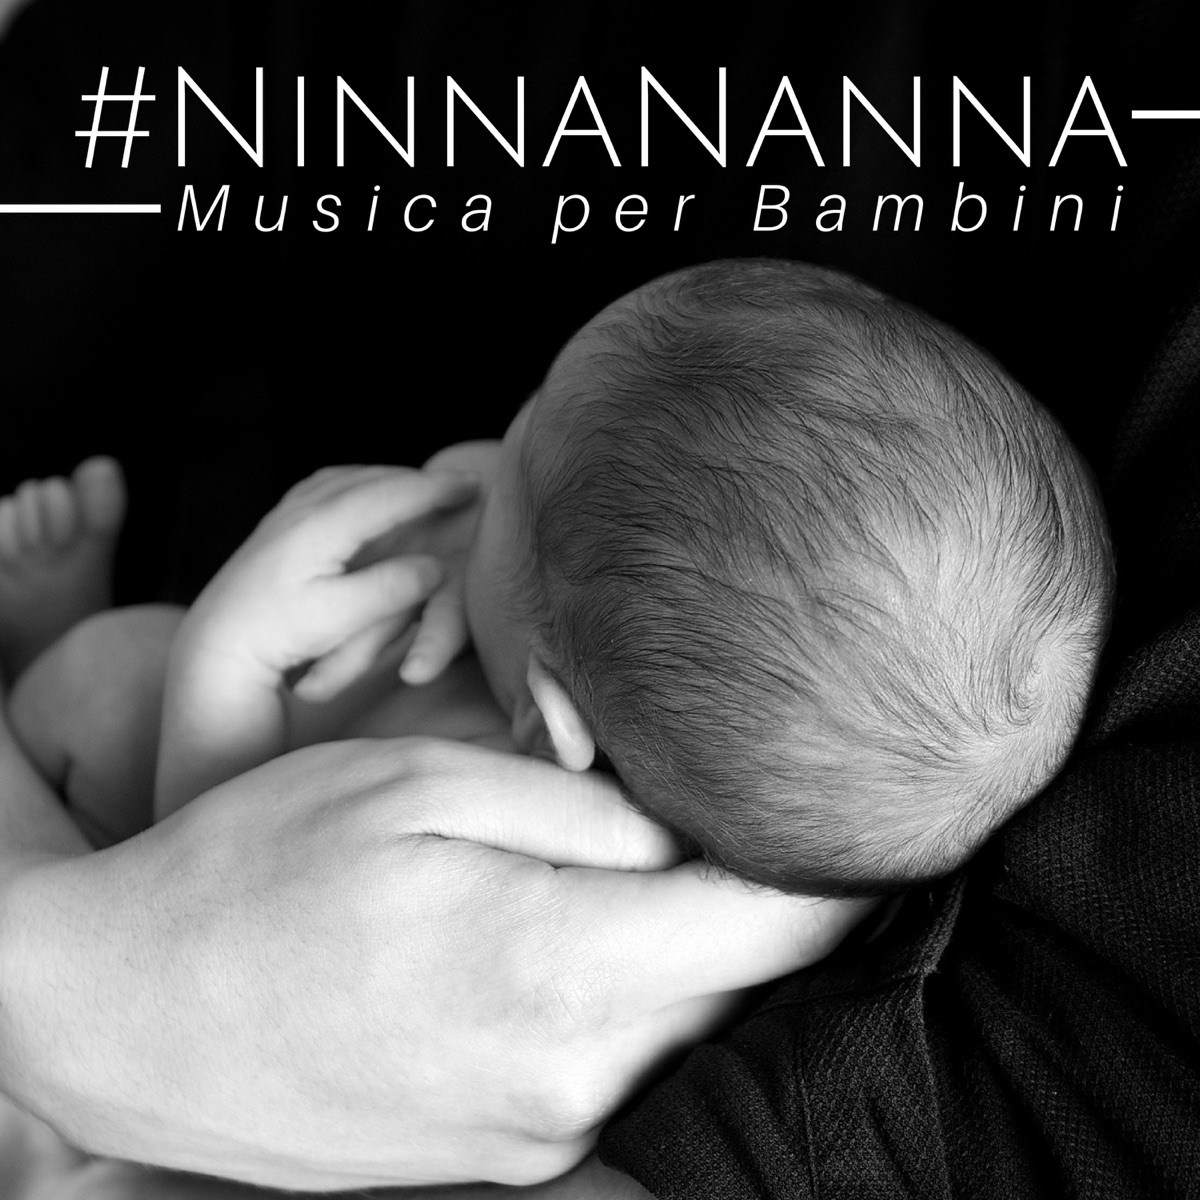 NinnaNanna Musica per Bambini: Rilassamento Continuo, Musica Calmante,  Suoni della Natura, Musica per la Gravidanza - Album by Ninna Nanna Mamma -  Apple Music